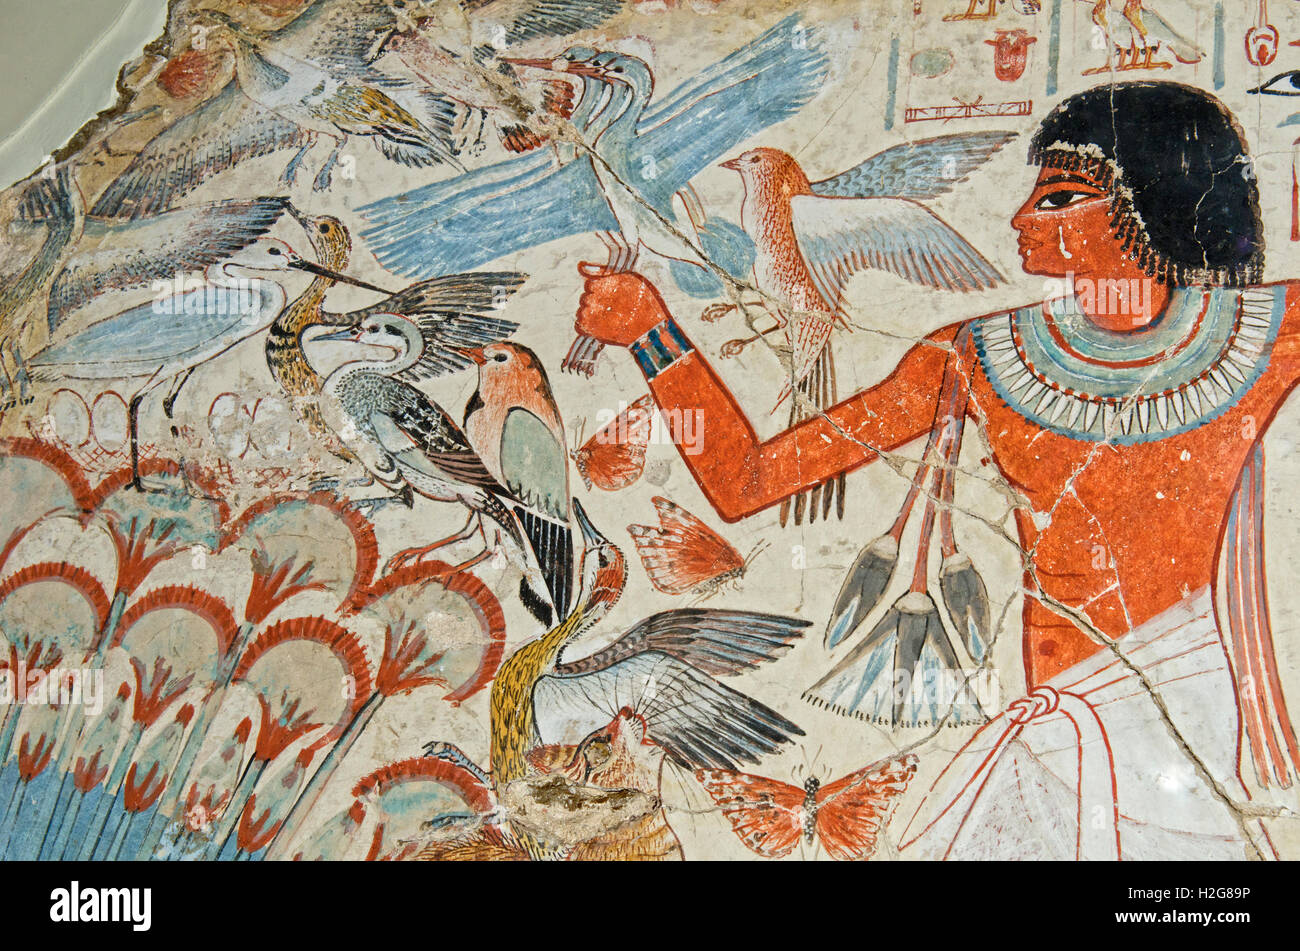 Détail de peinture murale de la tombe chapelle de Nebanum, Thèbes, Égypte fin du xviiie dynastie, autour de 1350 BC Nebamun s'affiche la chasse aux oiseaux Banque D'Images